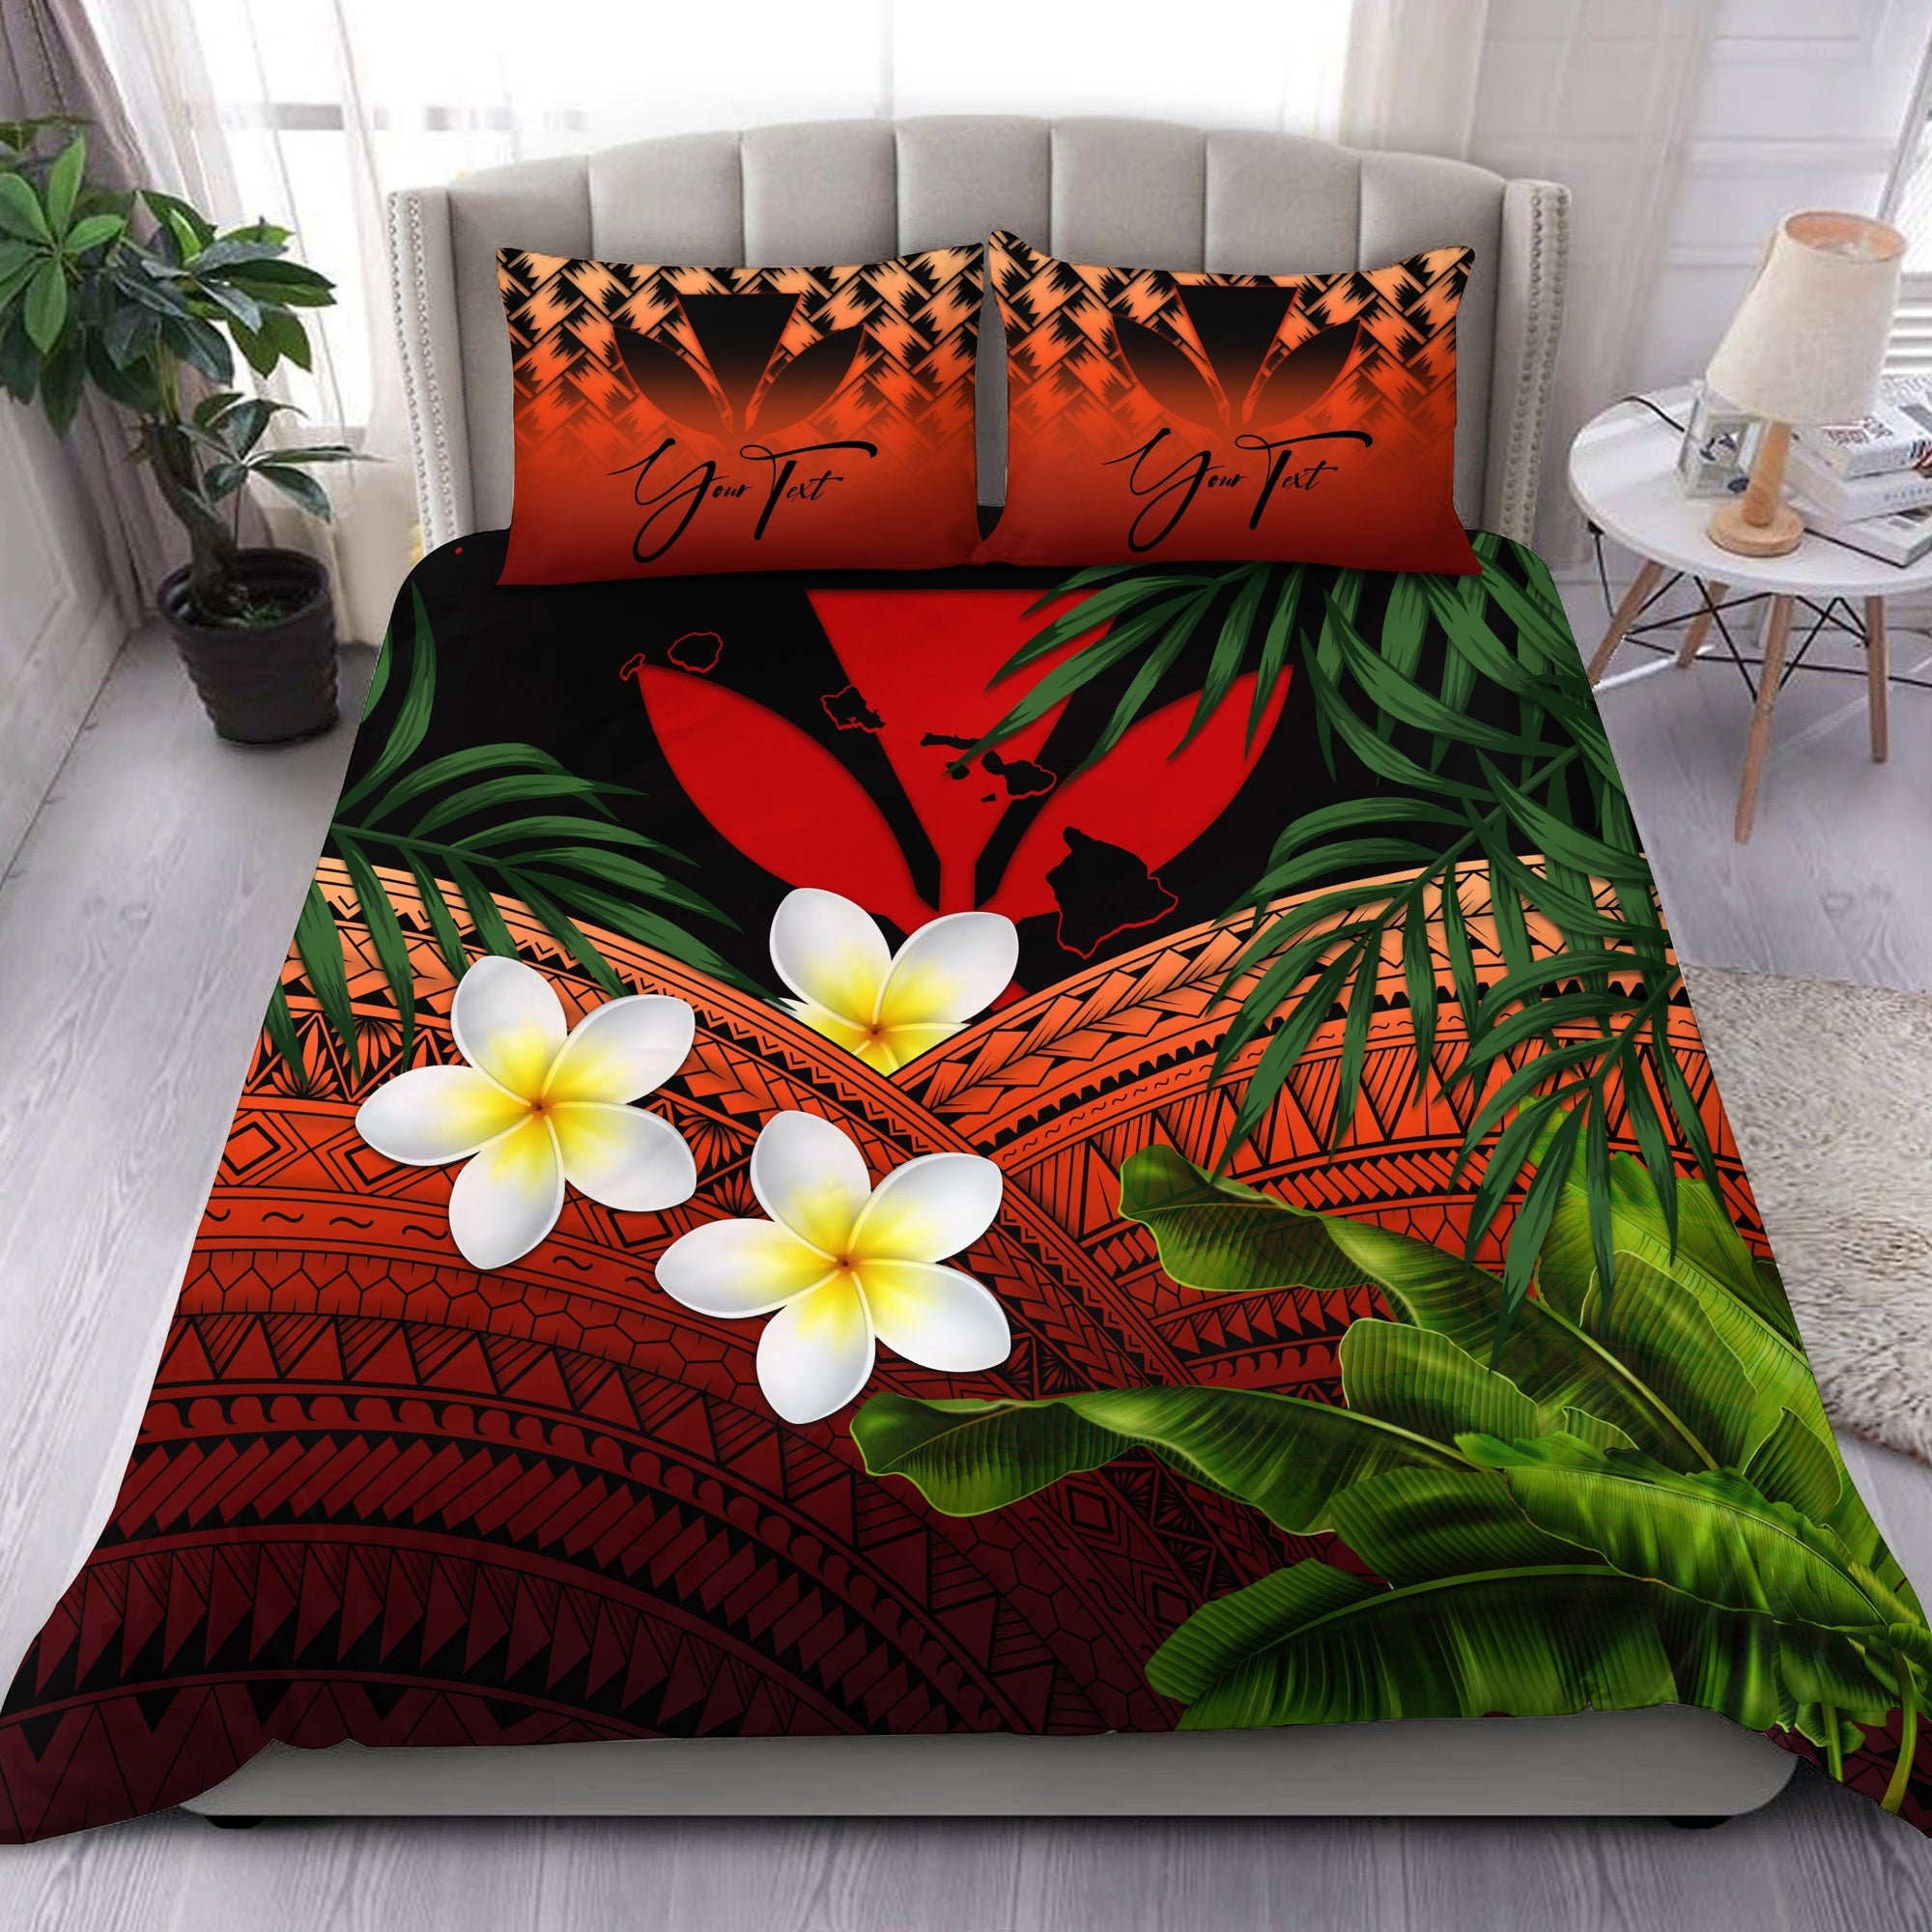 custom-kanaka-maoli-hawaiian-bedding-set-polynesian-plumeria-banana-leaves-red-personal-signature